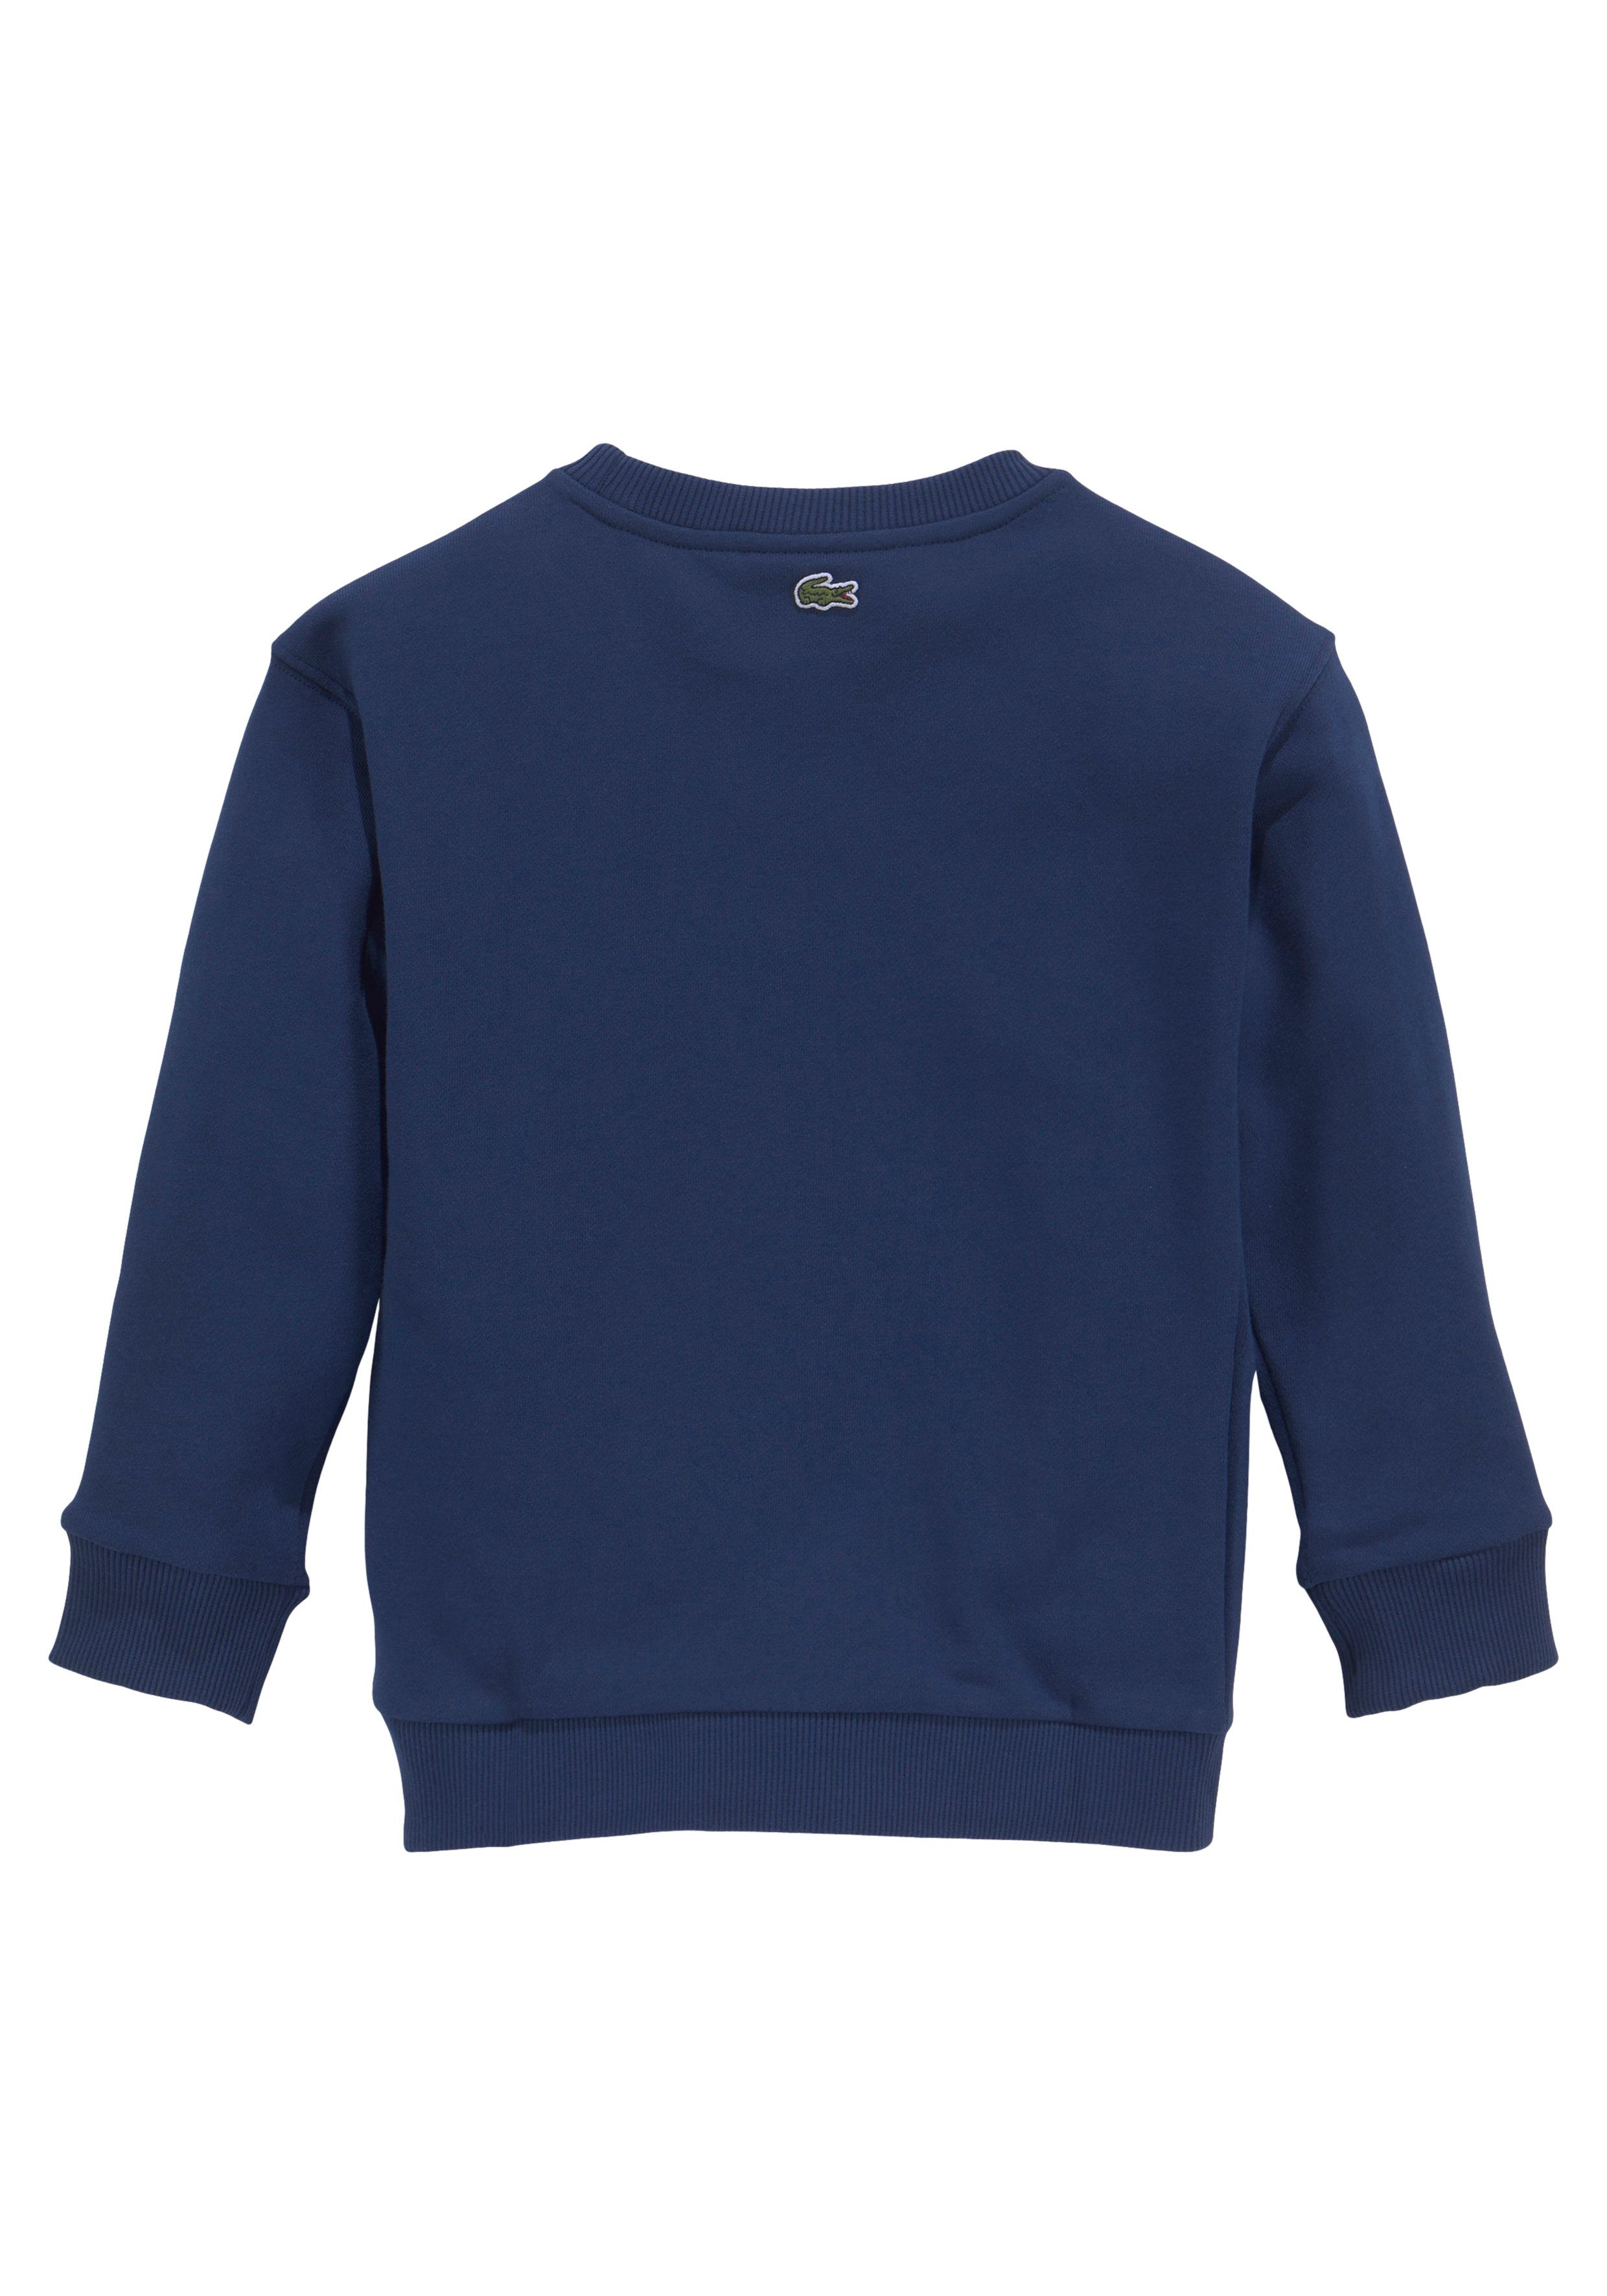 Labeldruck Lacoste blau der Kinder Kids Sweatshirt Brust MiniMe,mit modernem auf Junior